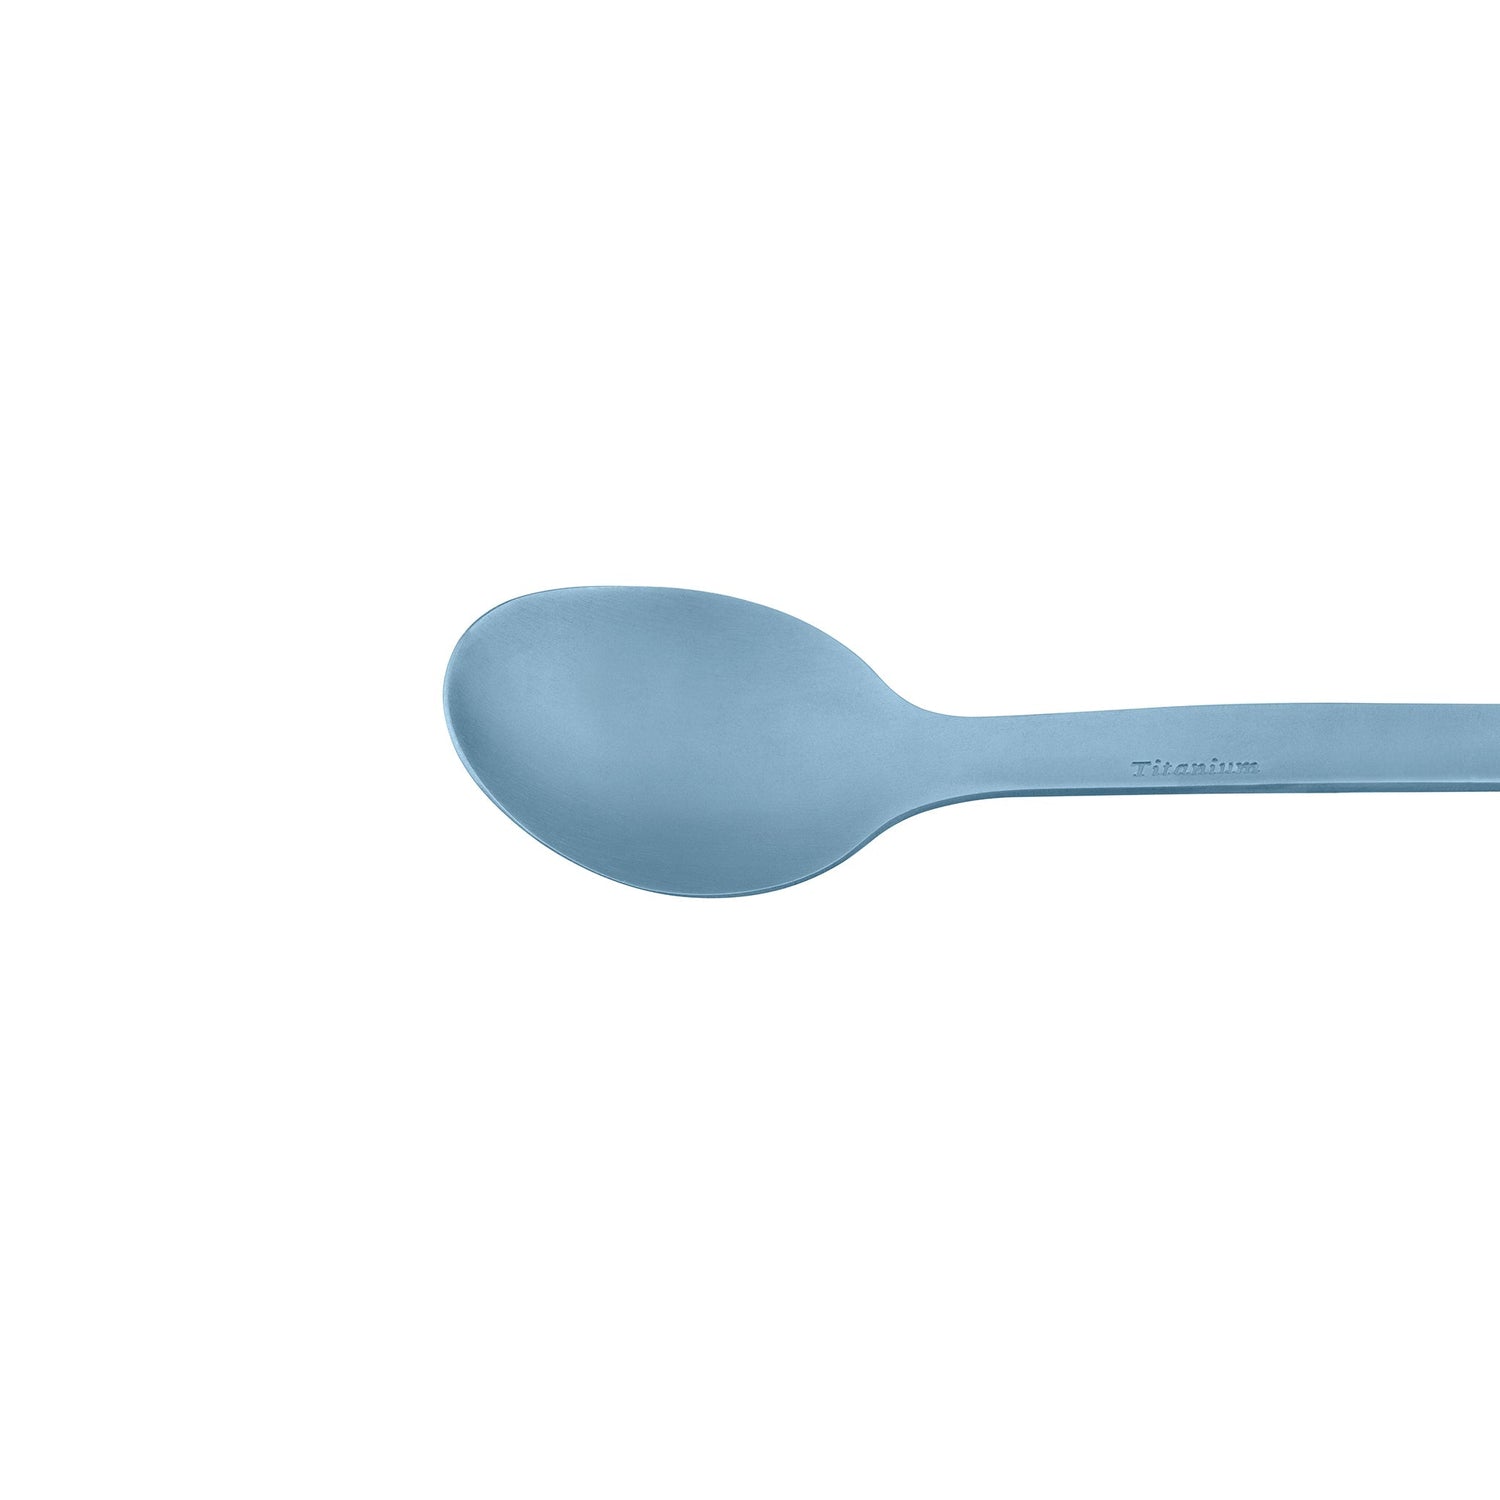 For Forks Sake Just Eat It Spoonrest, funny spoonrest